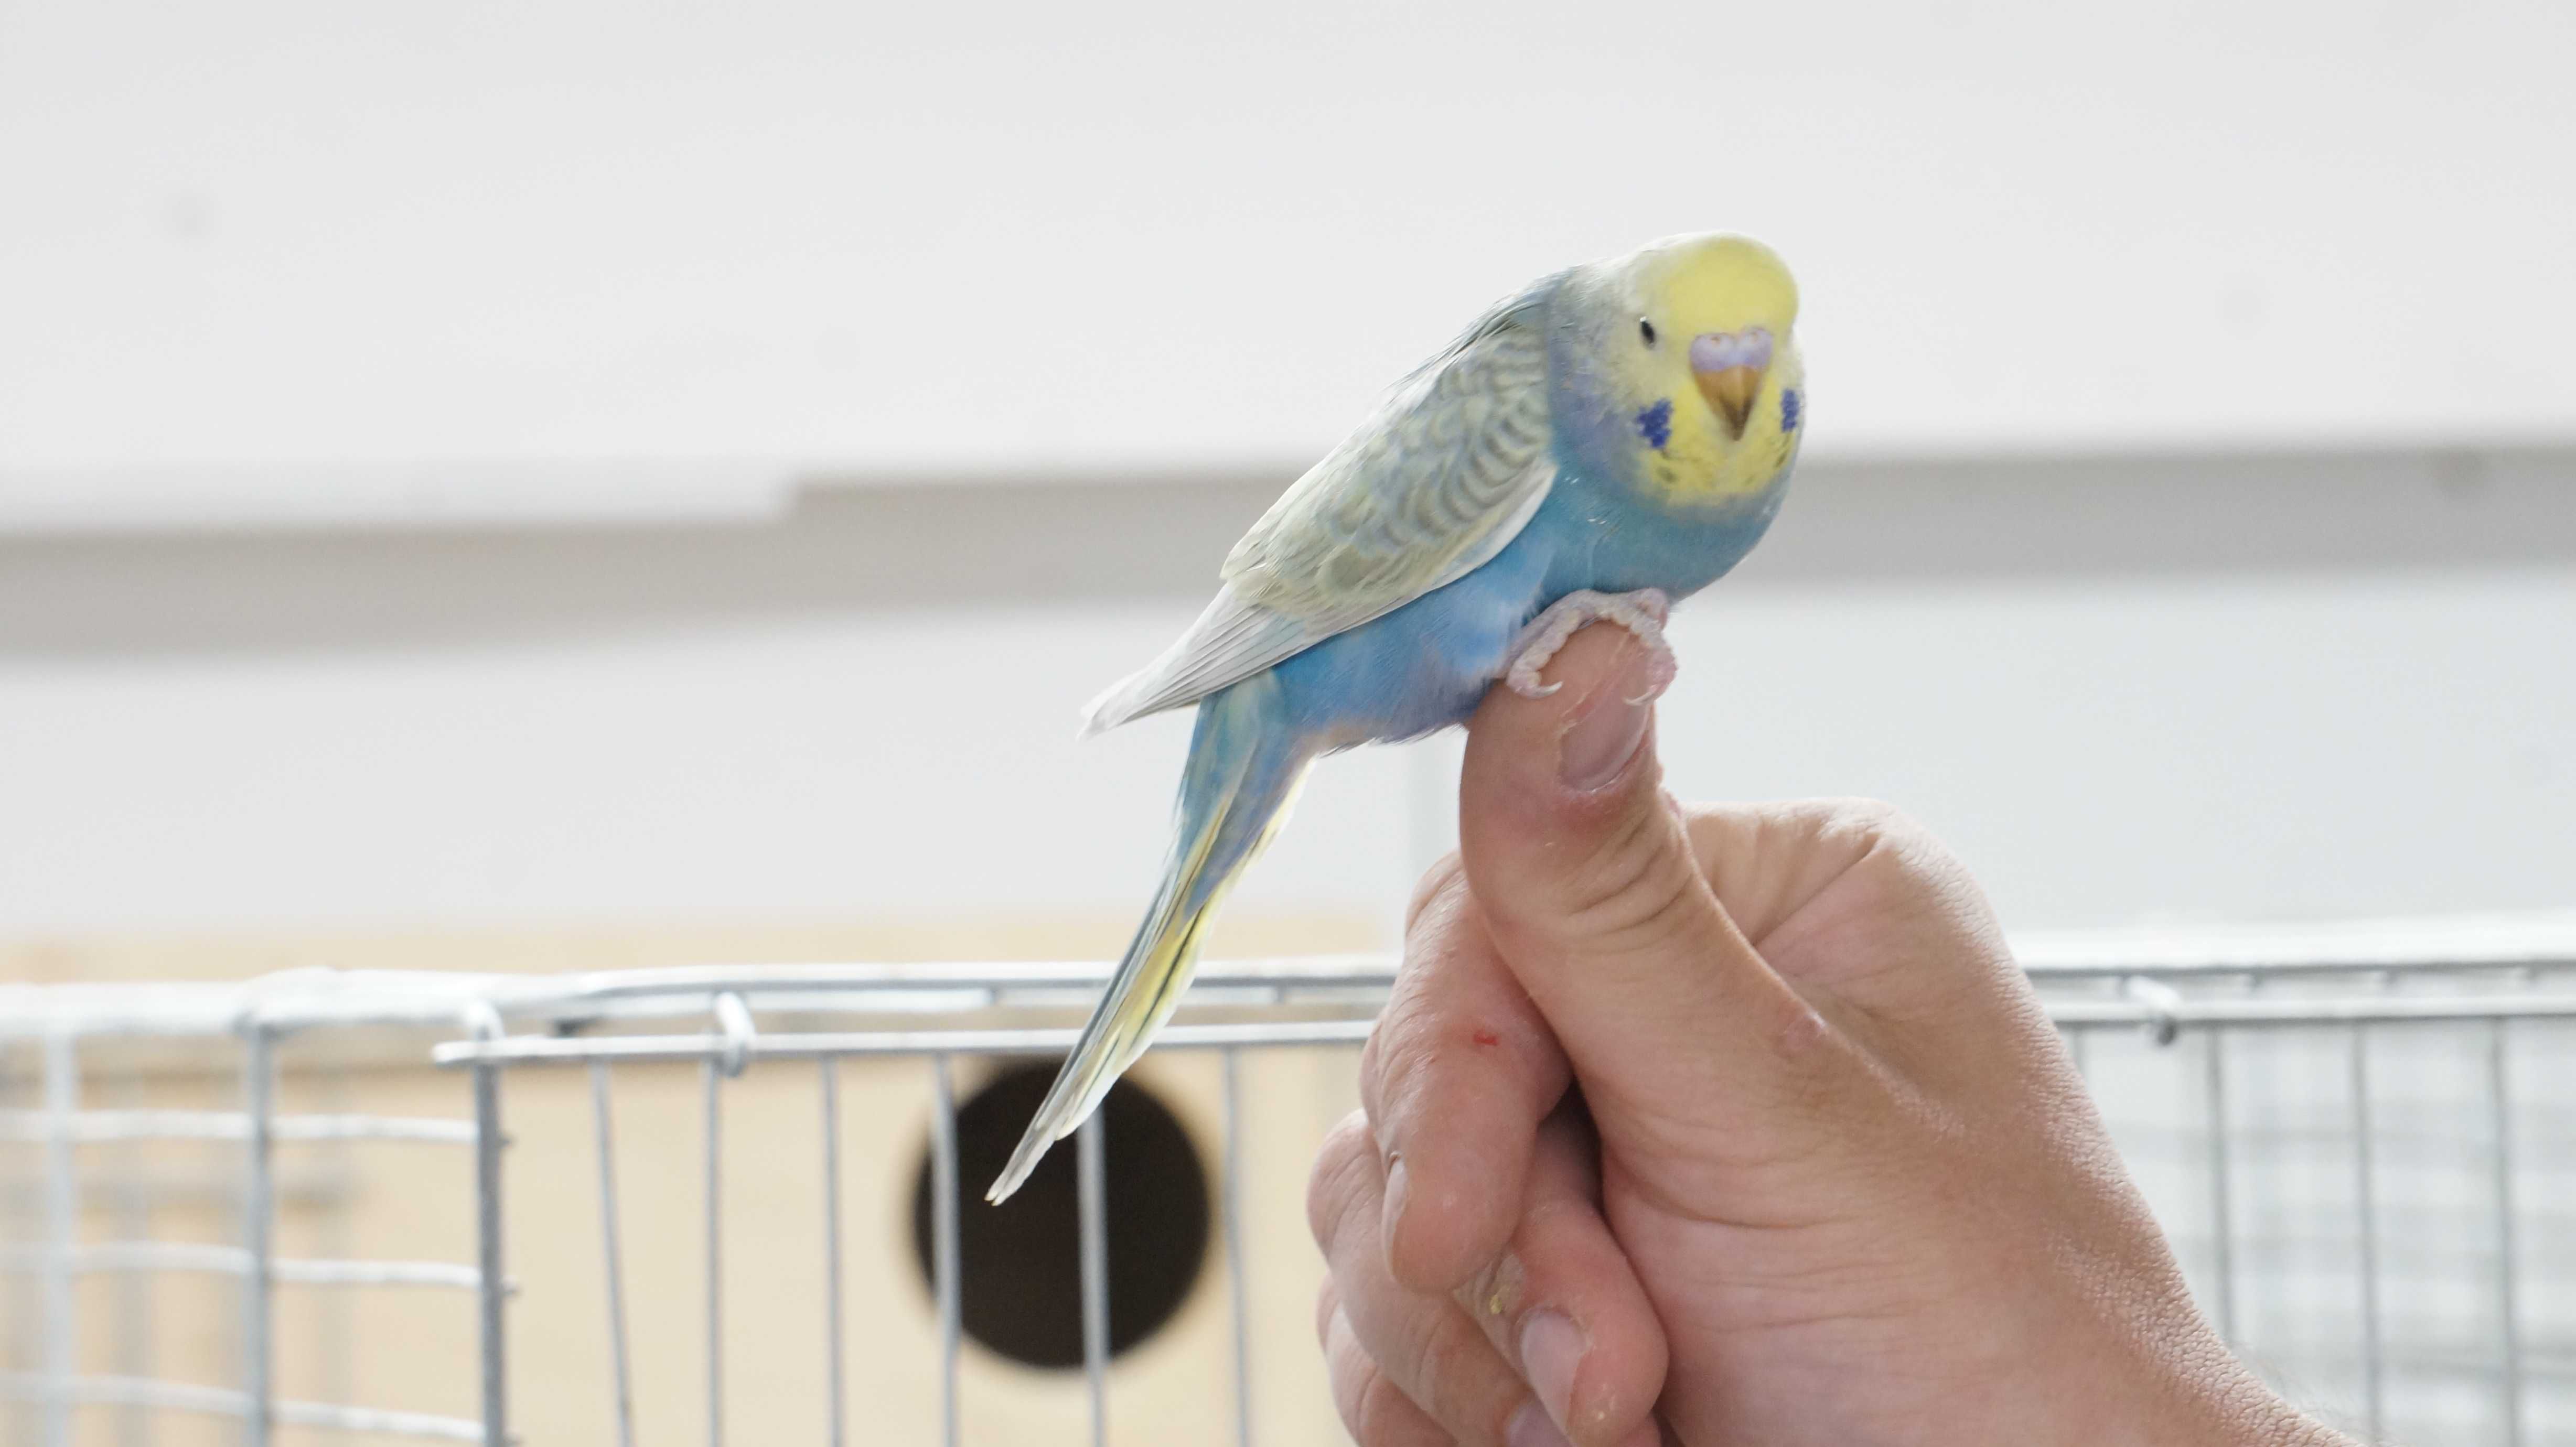 Papugi faliste-idealne do oswojenia